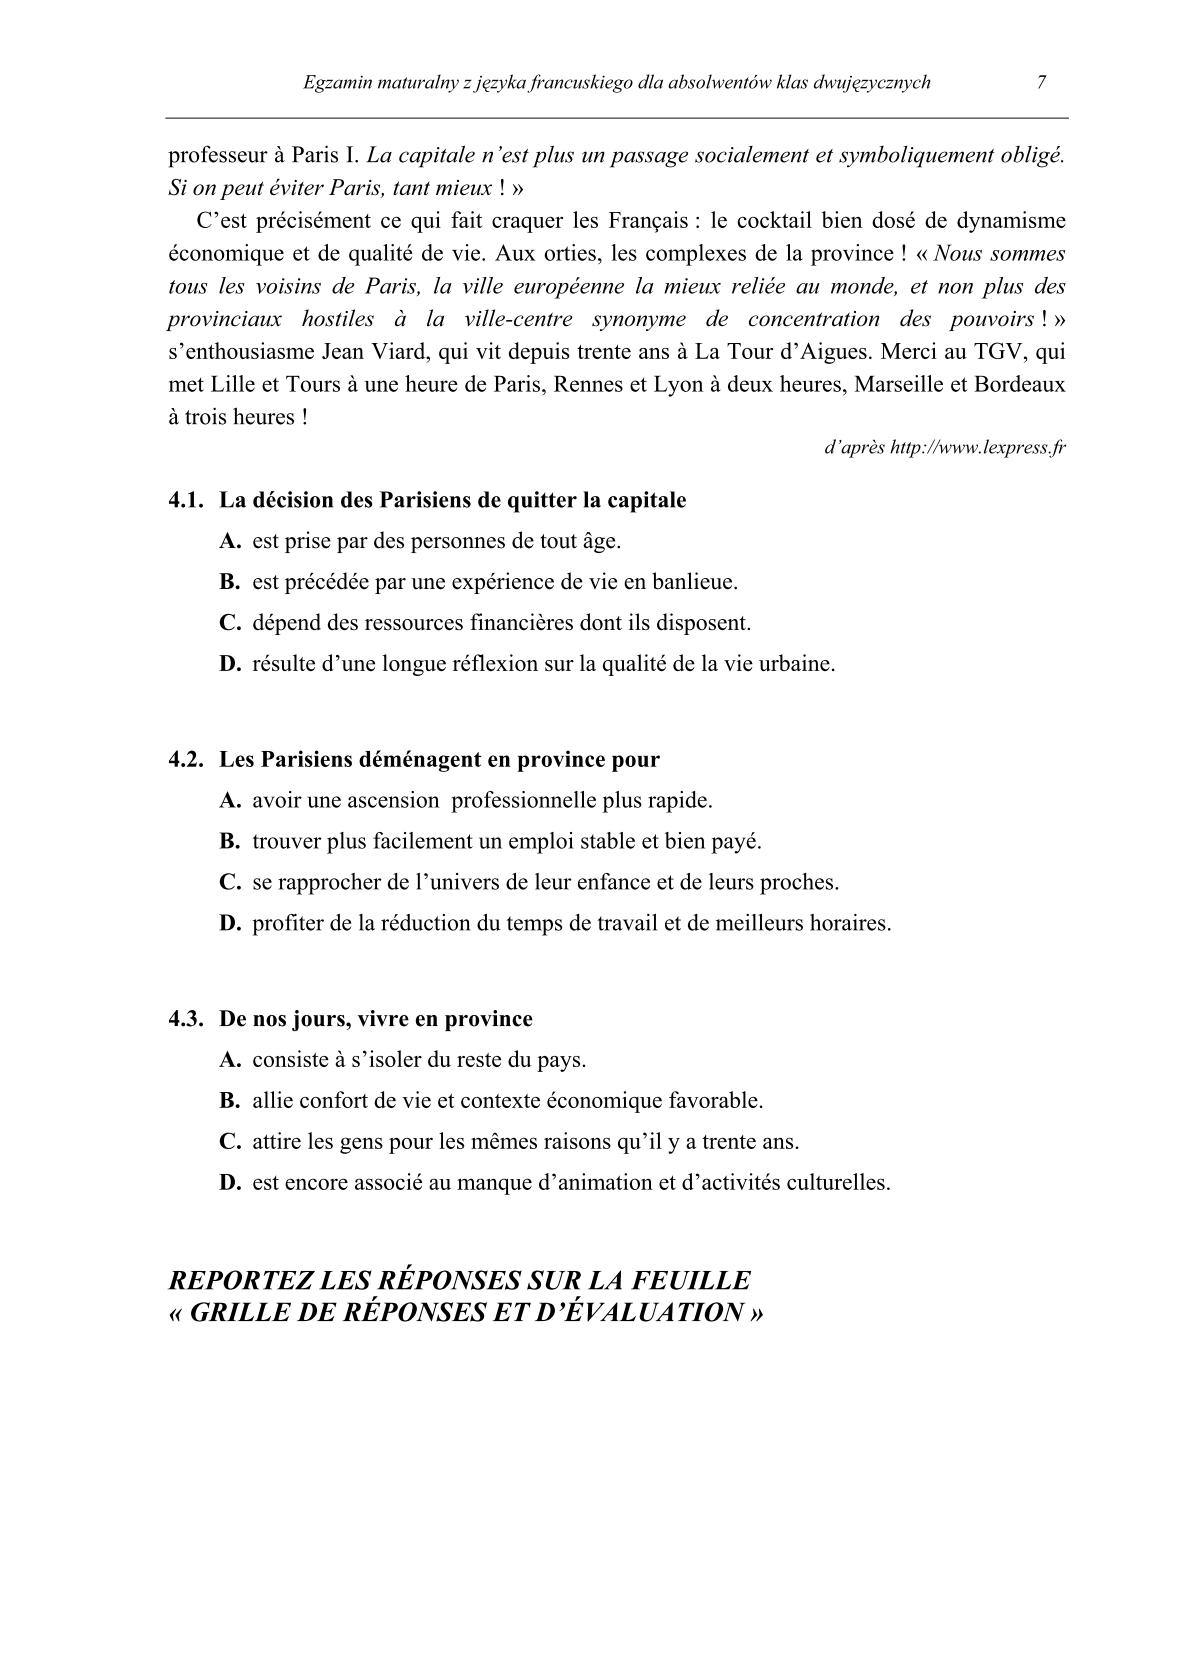 pytania-jezyk-francuski-dla-absolwentow-klas-dwujezycznych-matura-2014-str.7